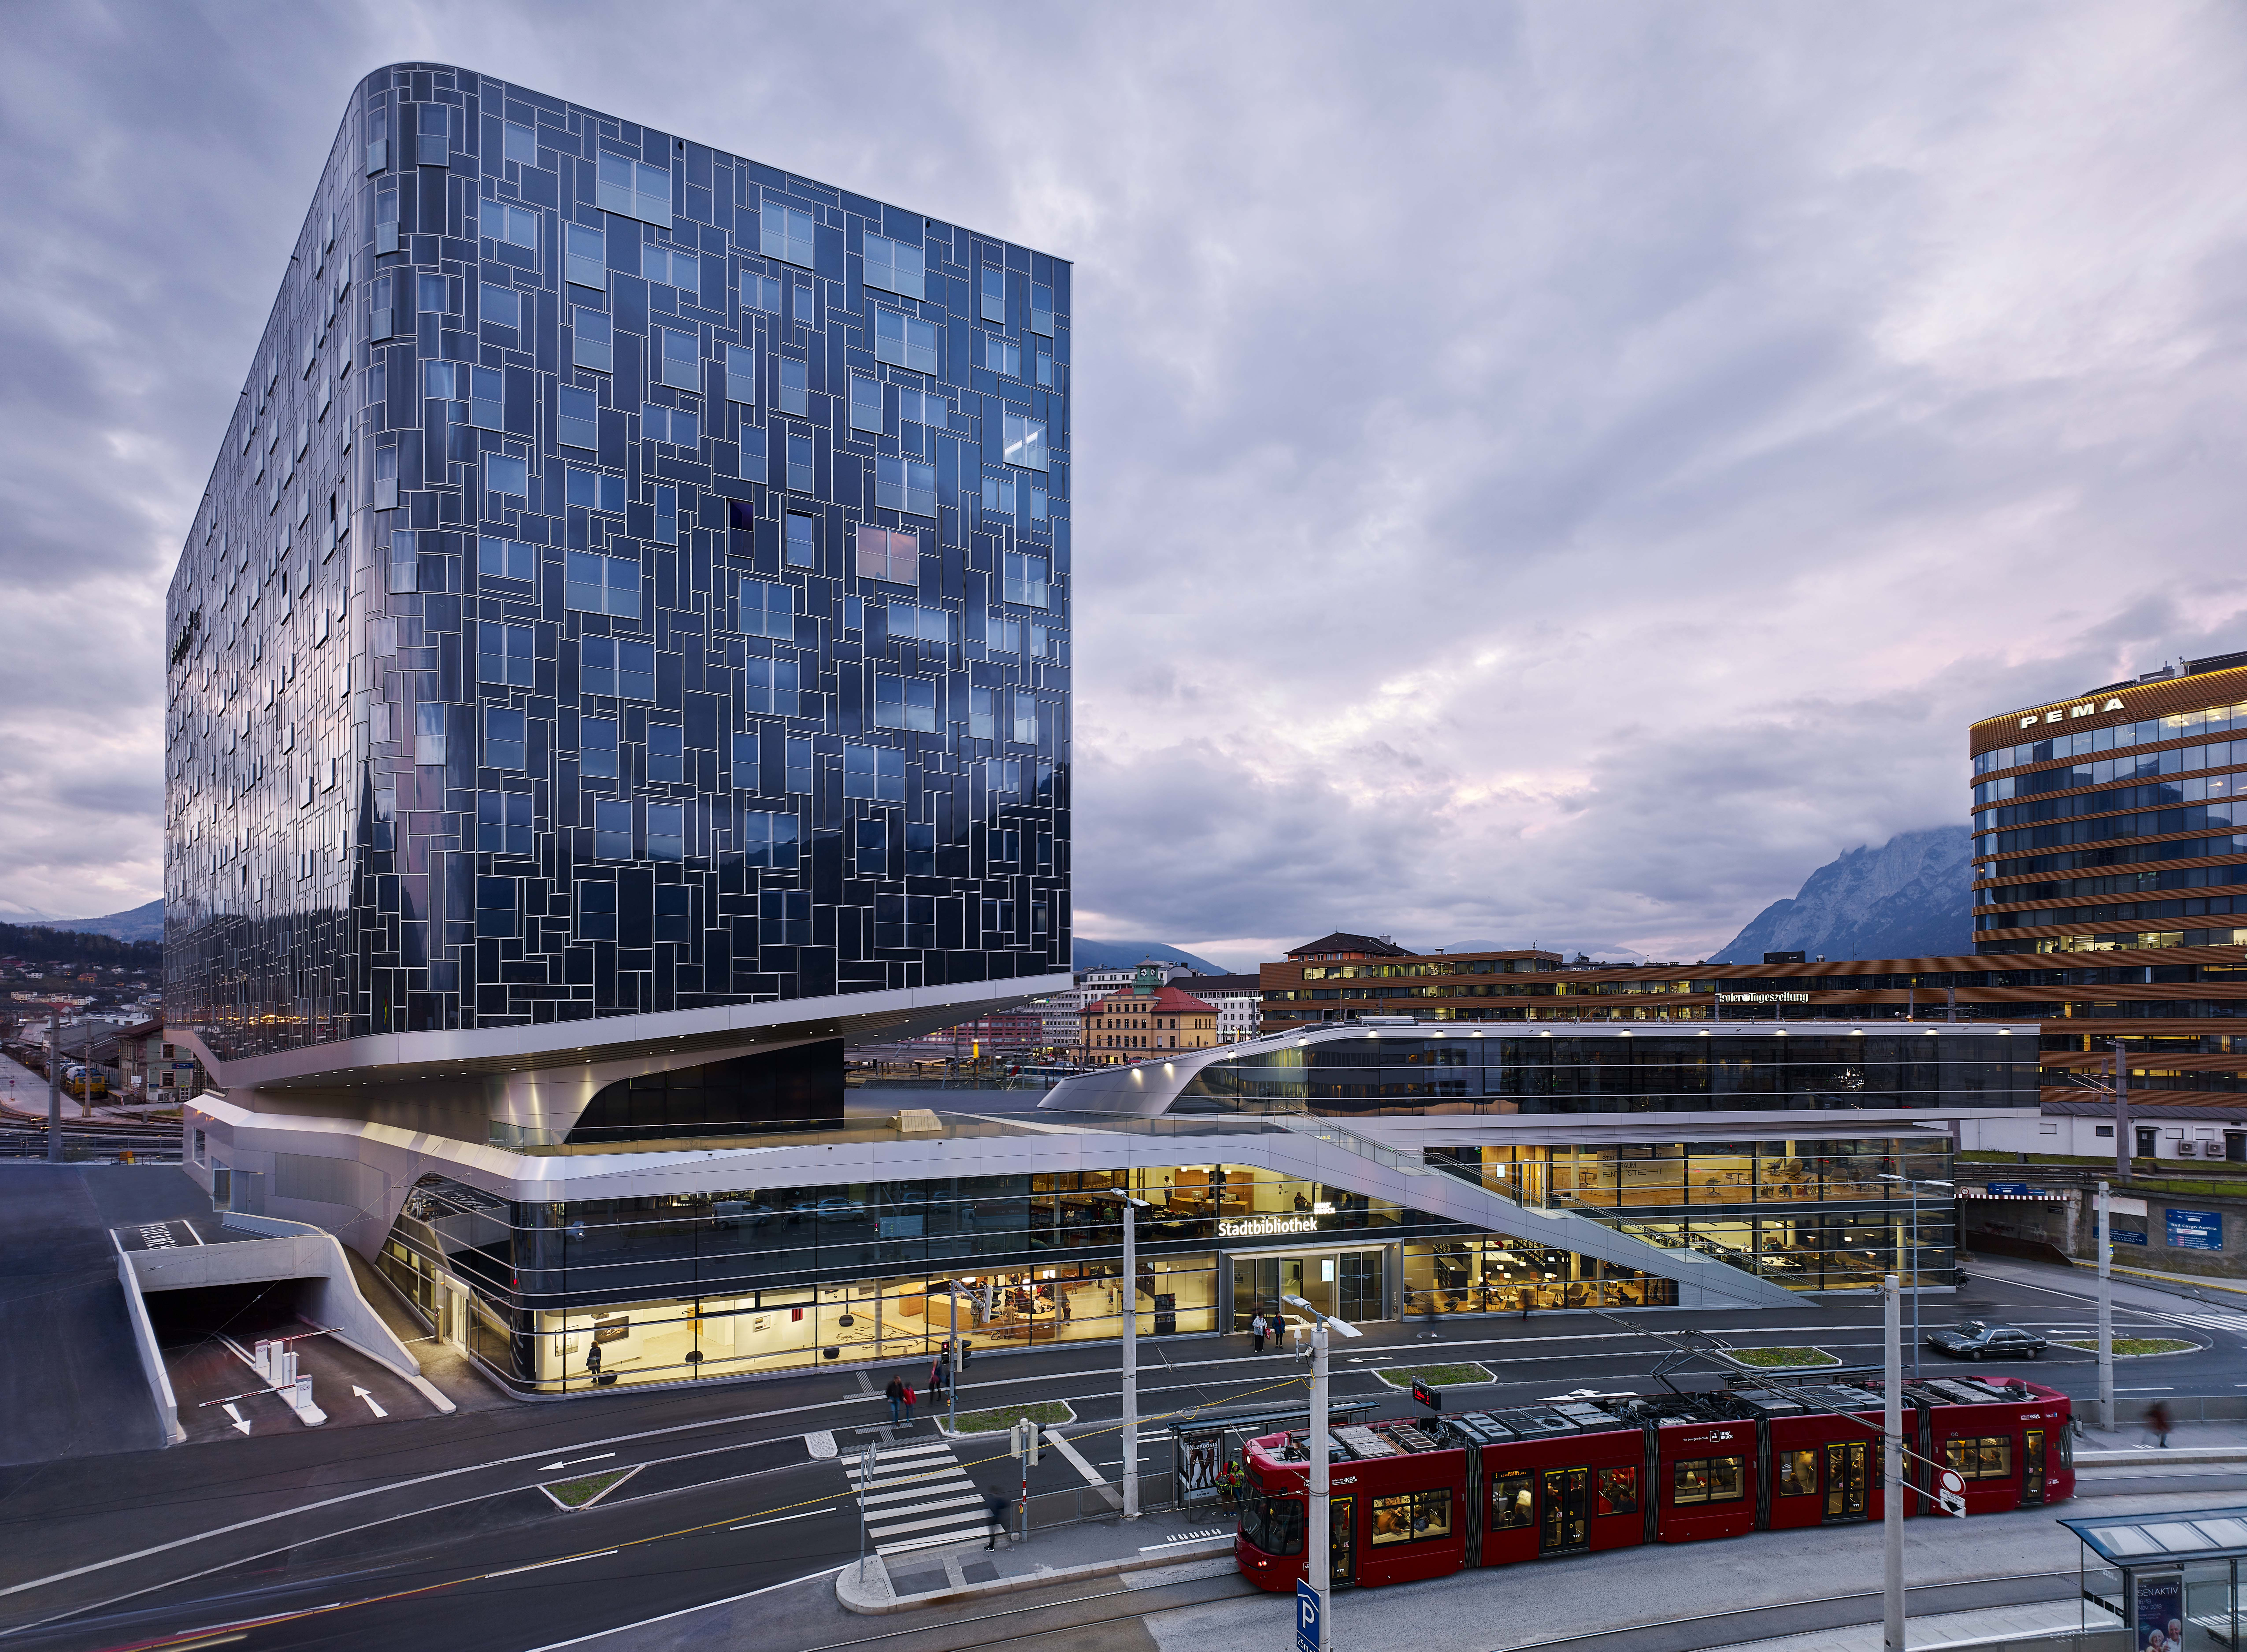 Der fertiggestellte Turm des PEMA 2 in der Nähe des Innsbrucker Hauptbahnhofes. Quelle: Marc Lins Photography